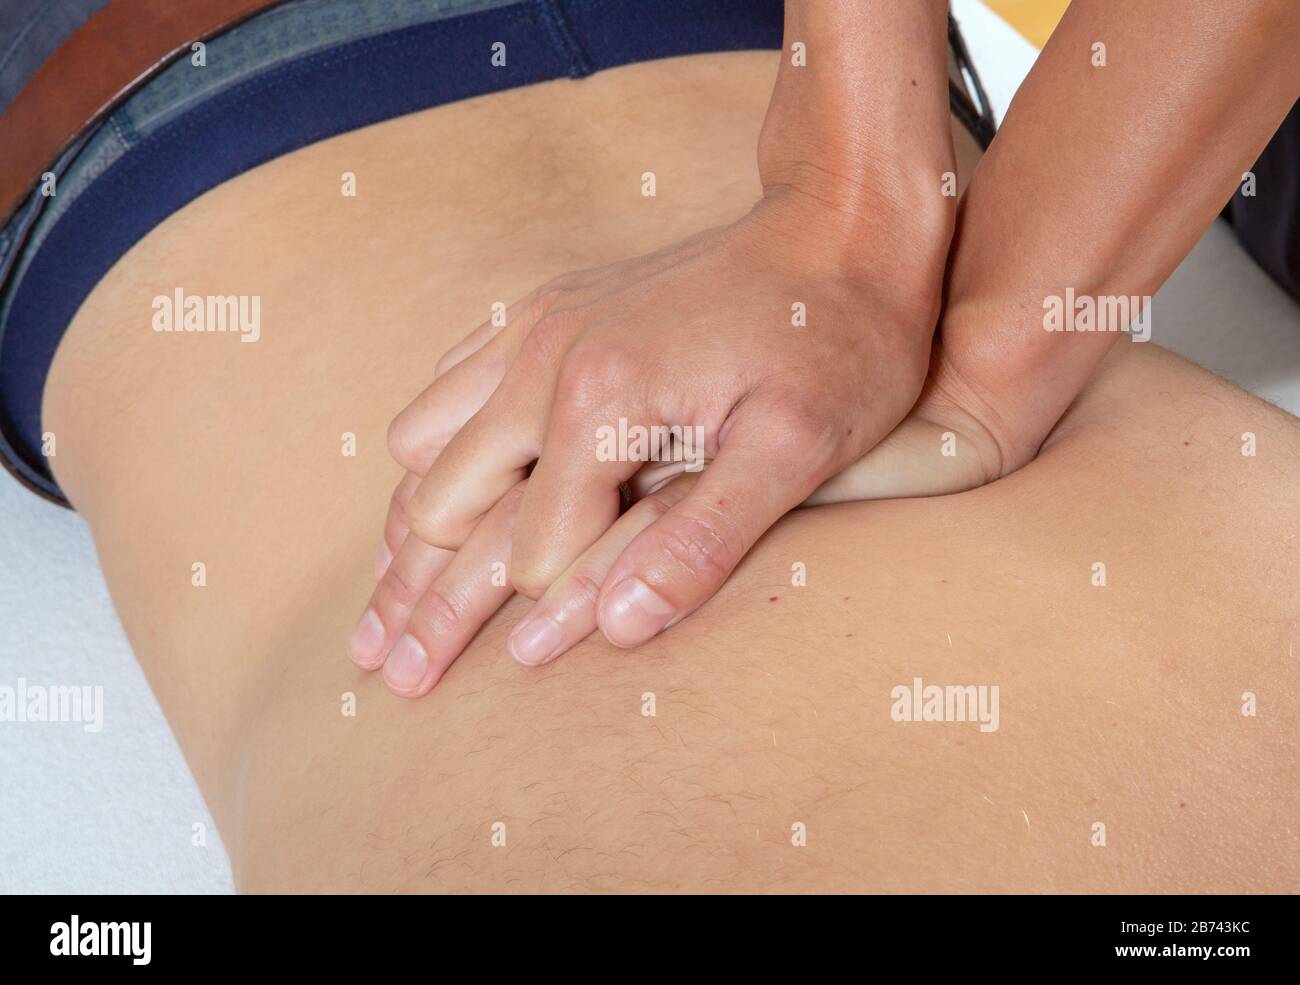 Ein Masseur massiert den Rücken und die unteren Körperteile des menschlichen Körpers, England. Stockfoto